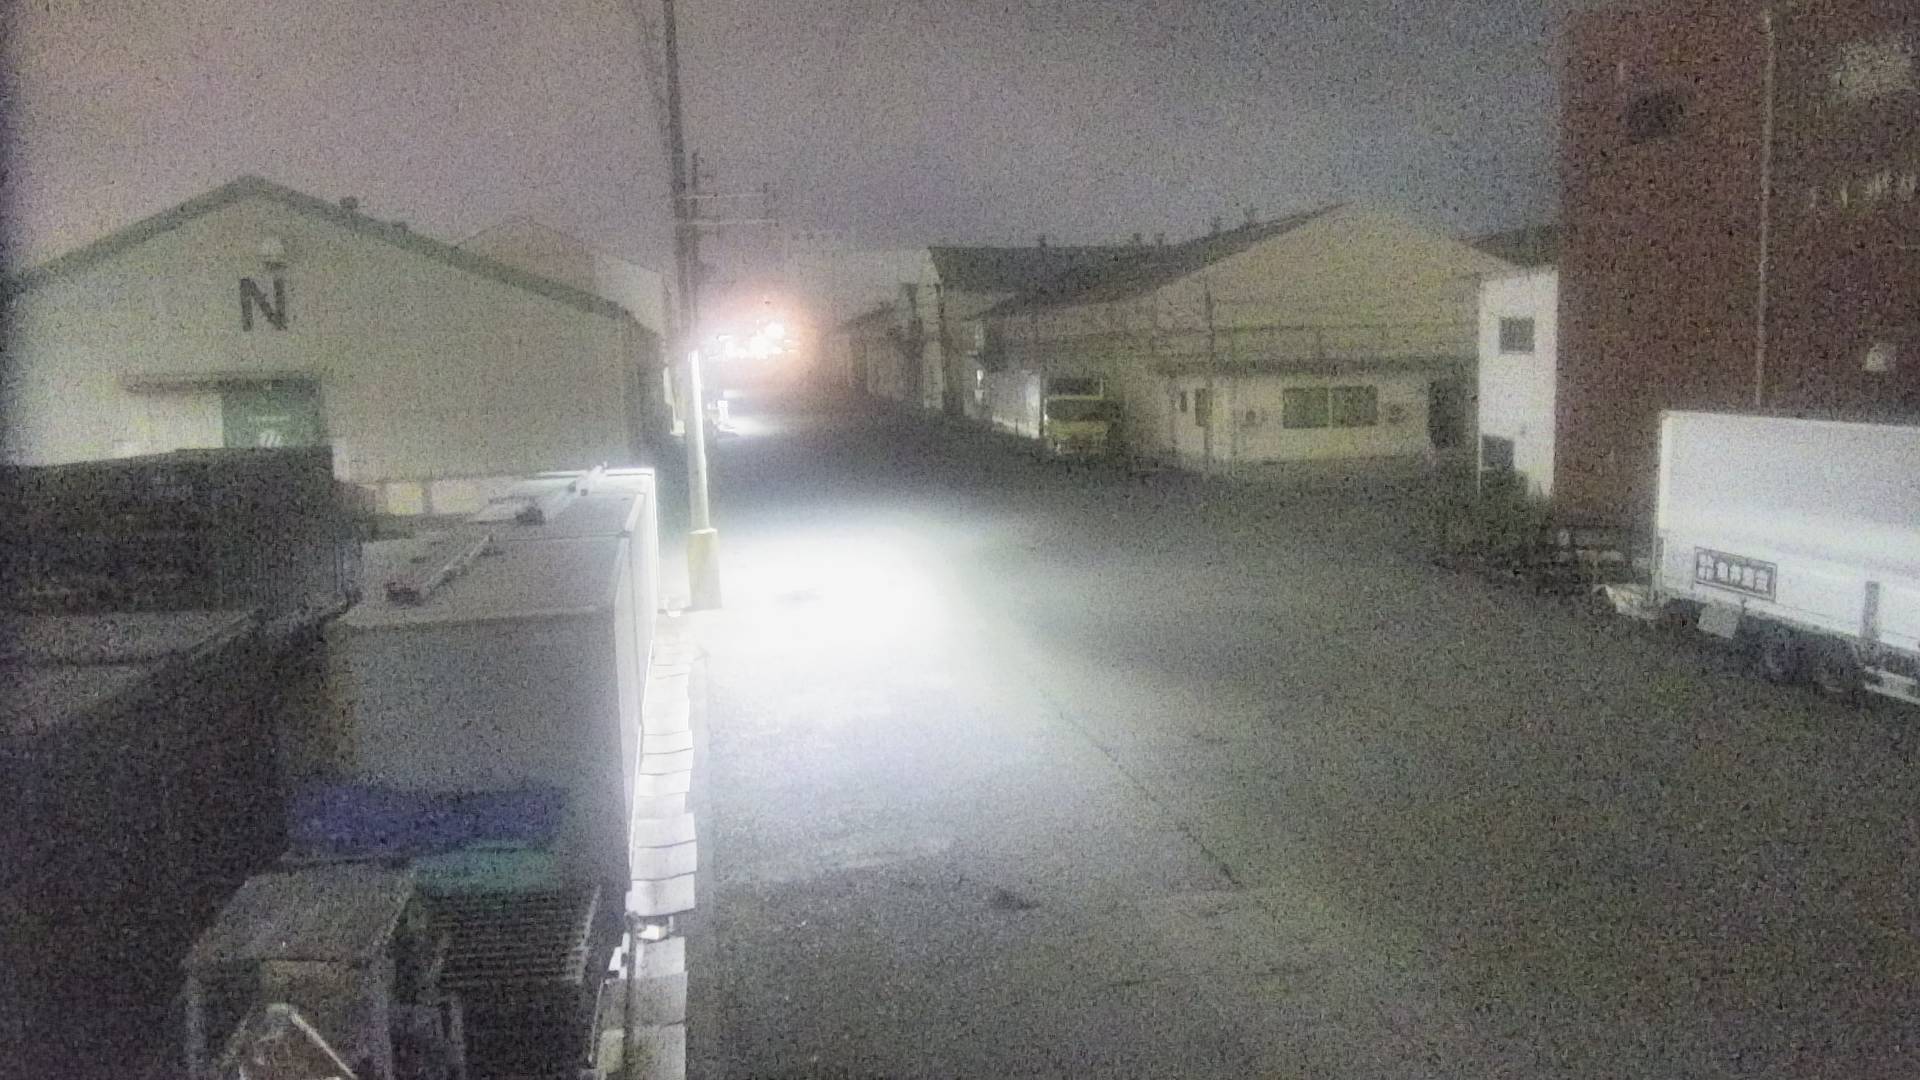 兵庫県の一般道ライブカメラ｢兵庫突堤 兵庫区築地町｣のライブ画像